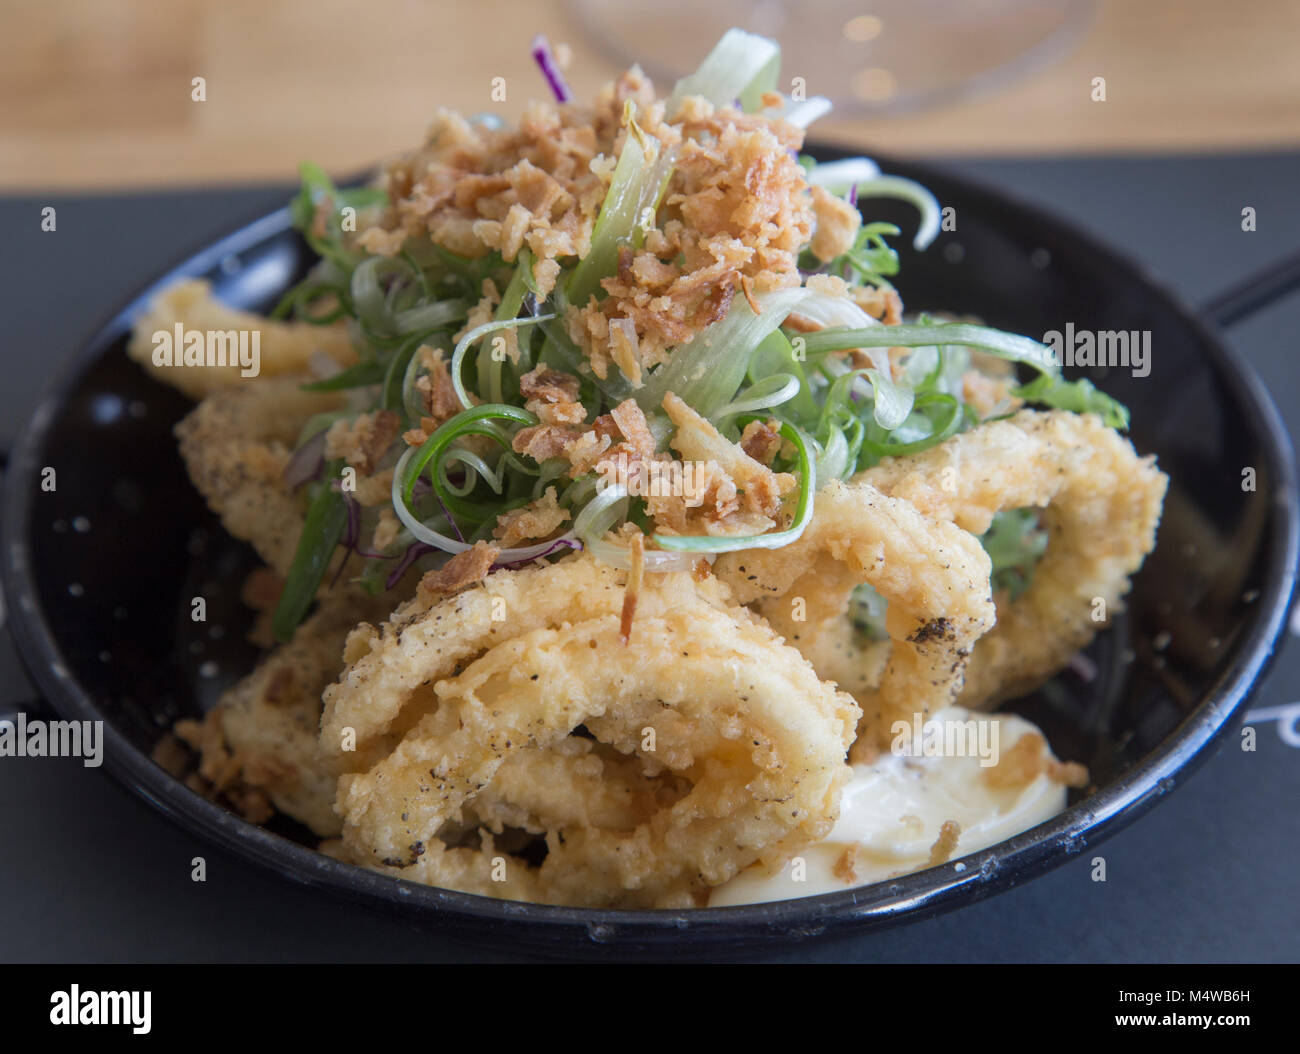 Crunchy golden beschichtete calamari Ringe mit Salat und paniermehl eingerichtet Stockfoto